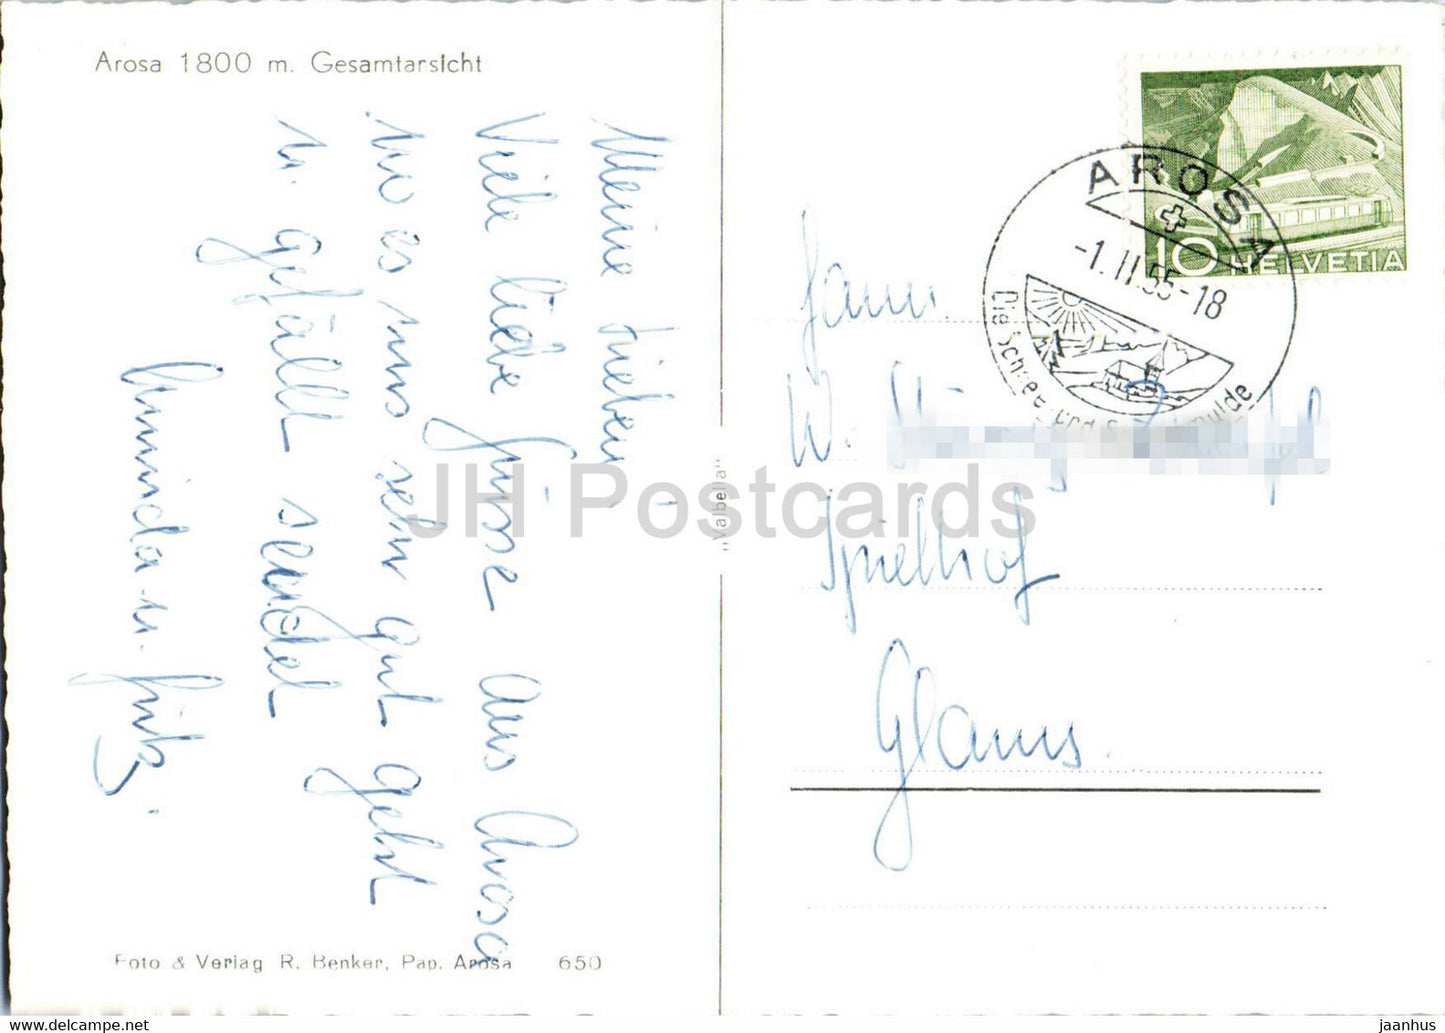 Arosa 1800 m - Gesamtansicht - 650 - old postcard - 1955 - Switzerland - used